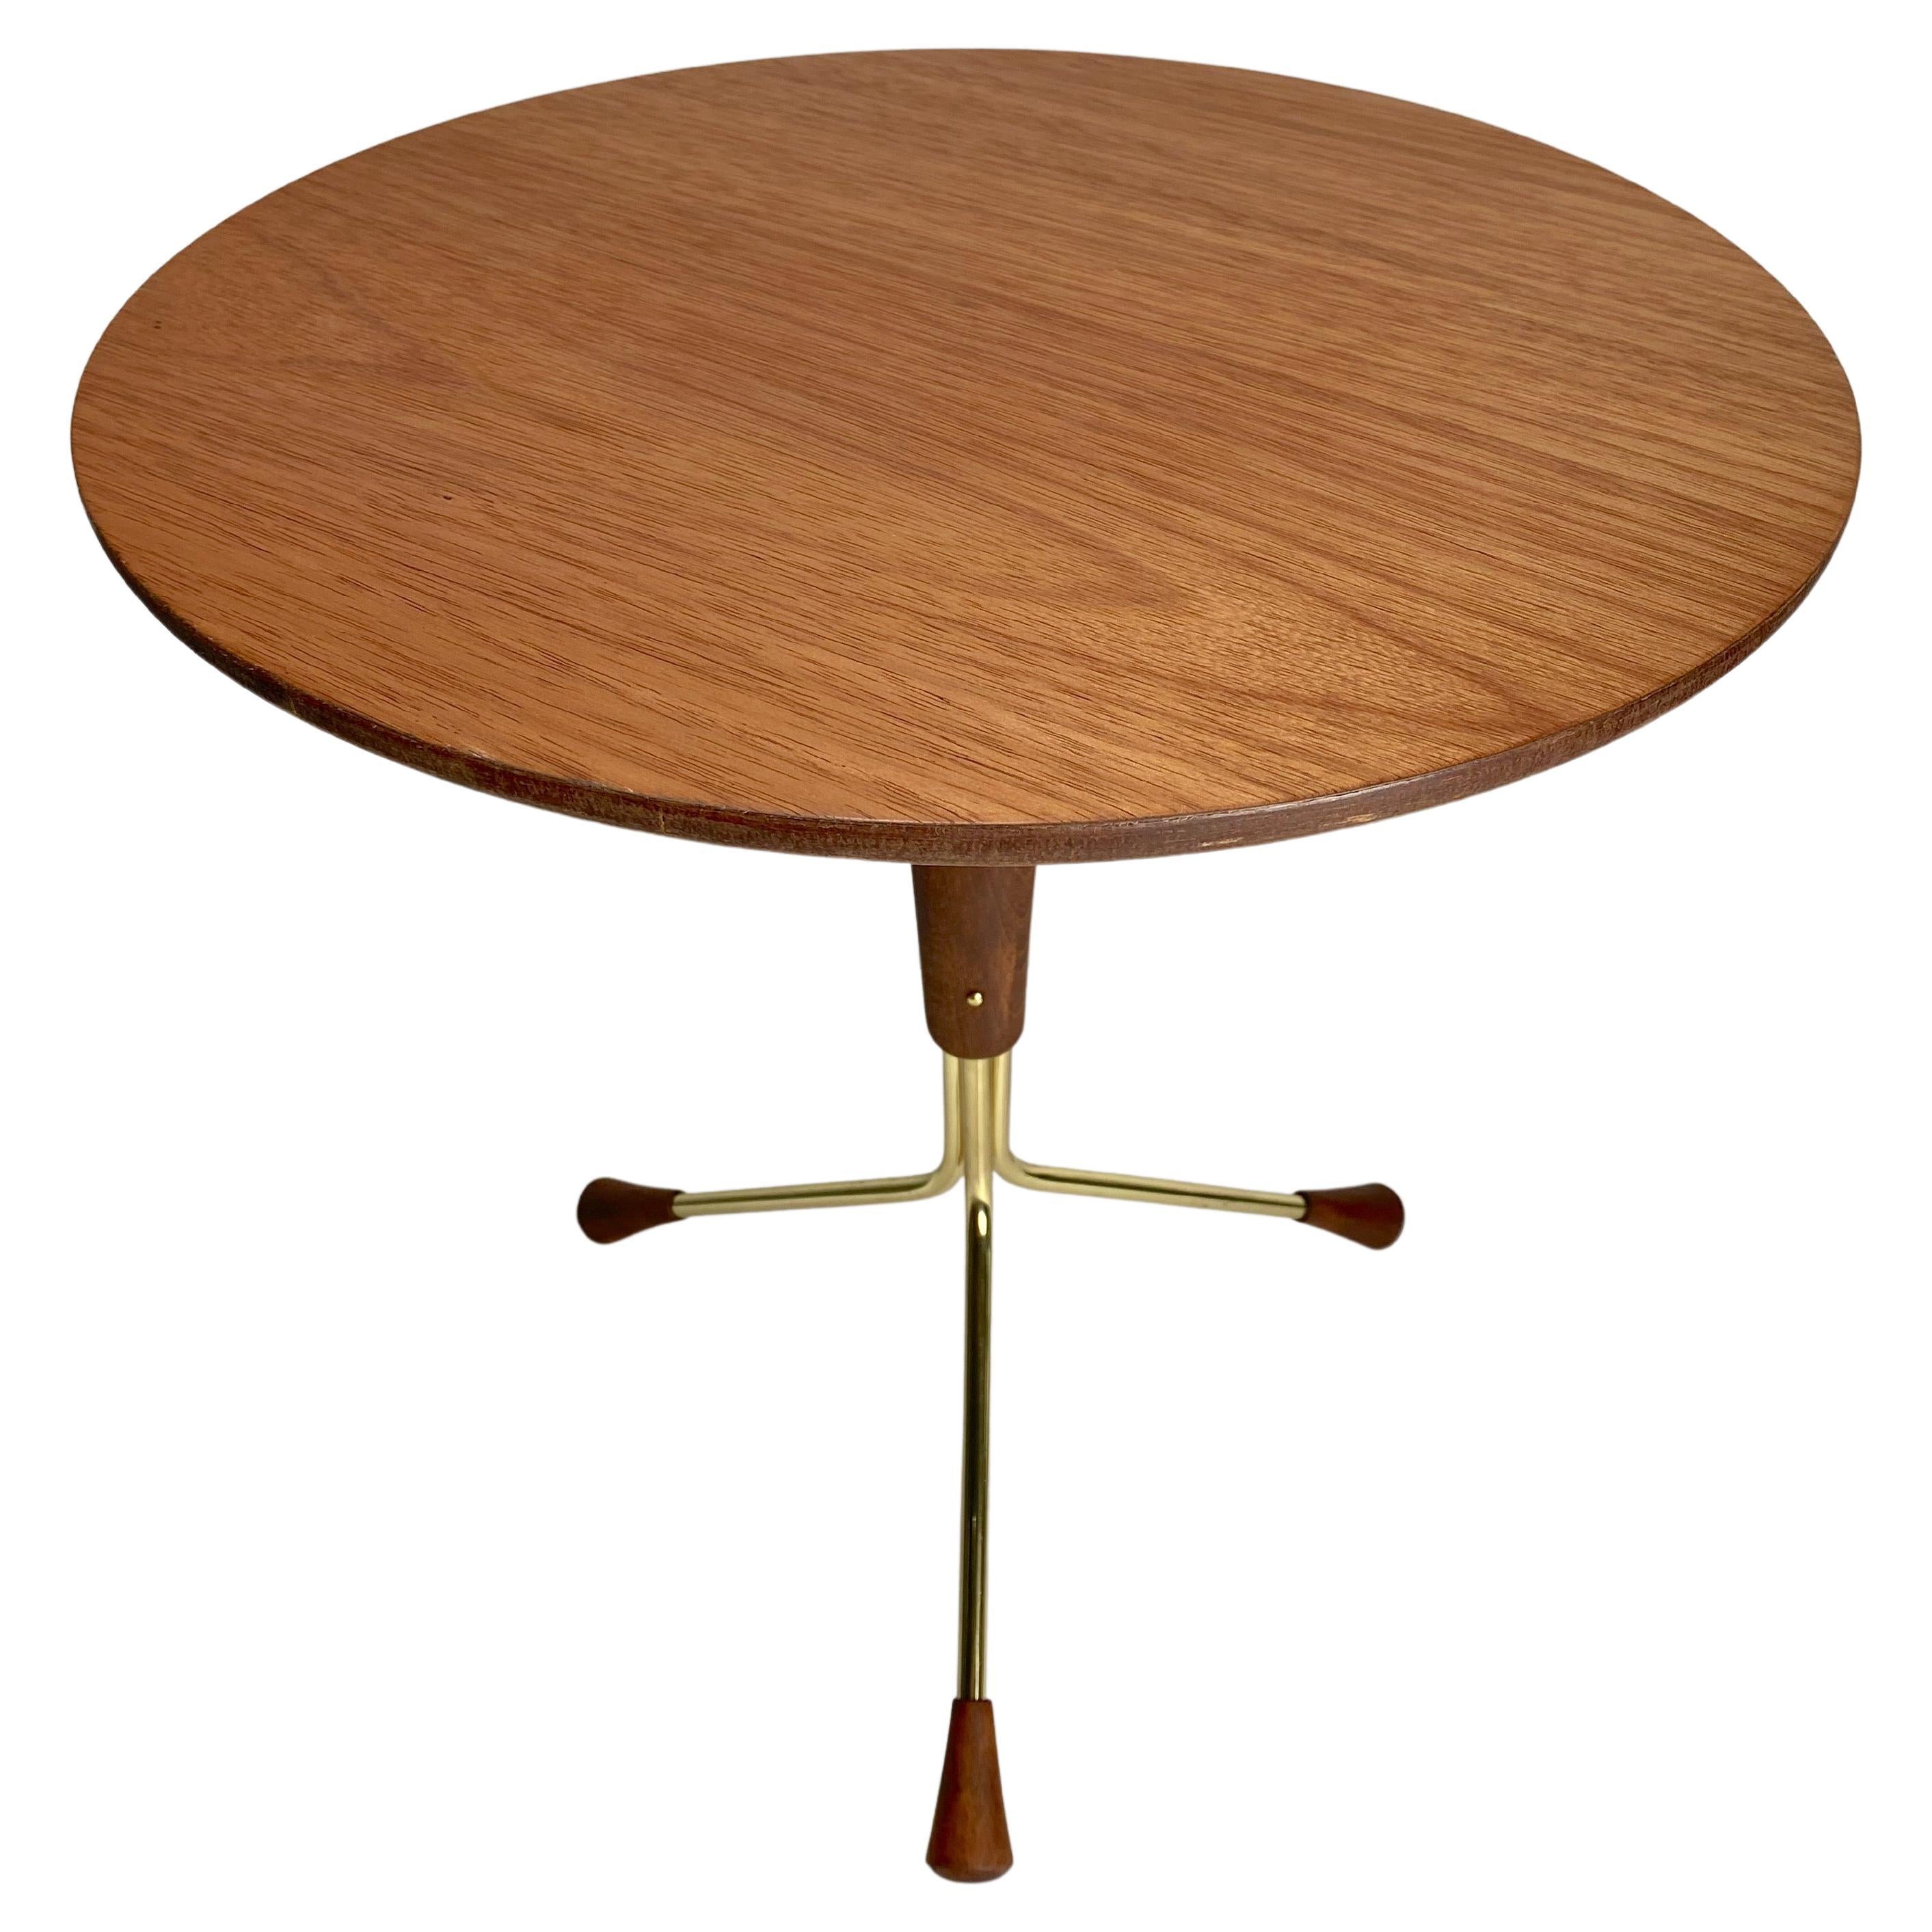 Small Tripod Base Table by Swedish Designer Alberts Larrson for Alberts Tibro